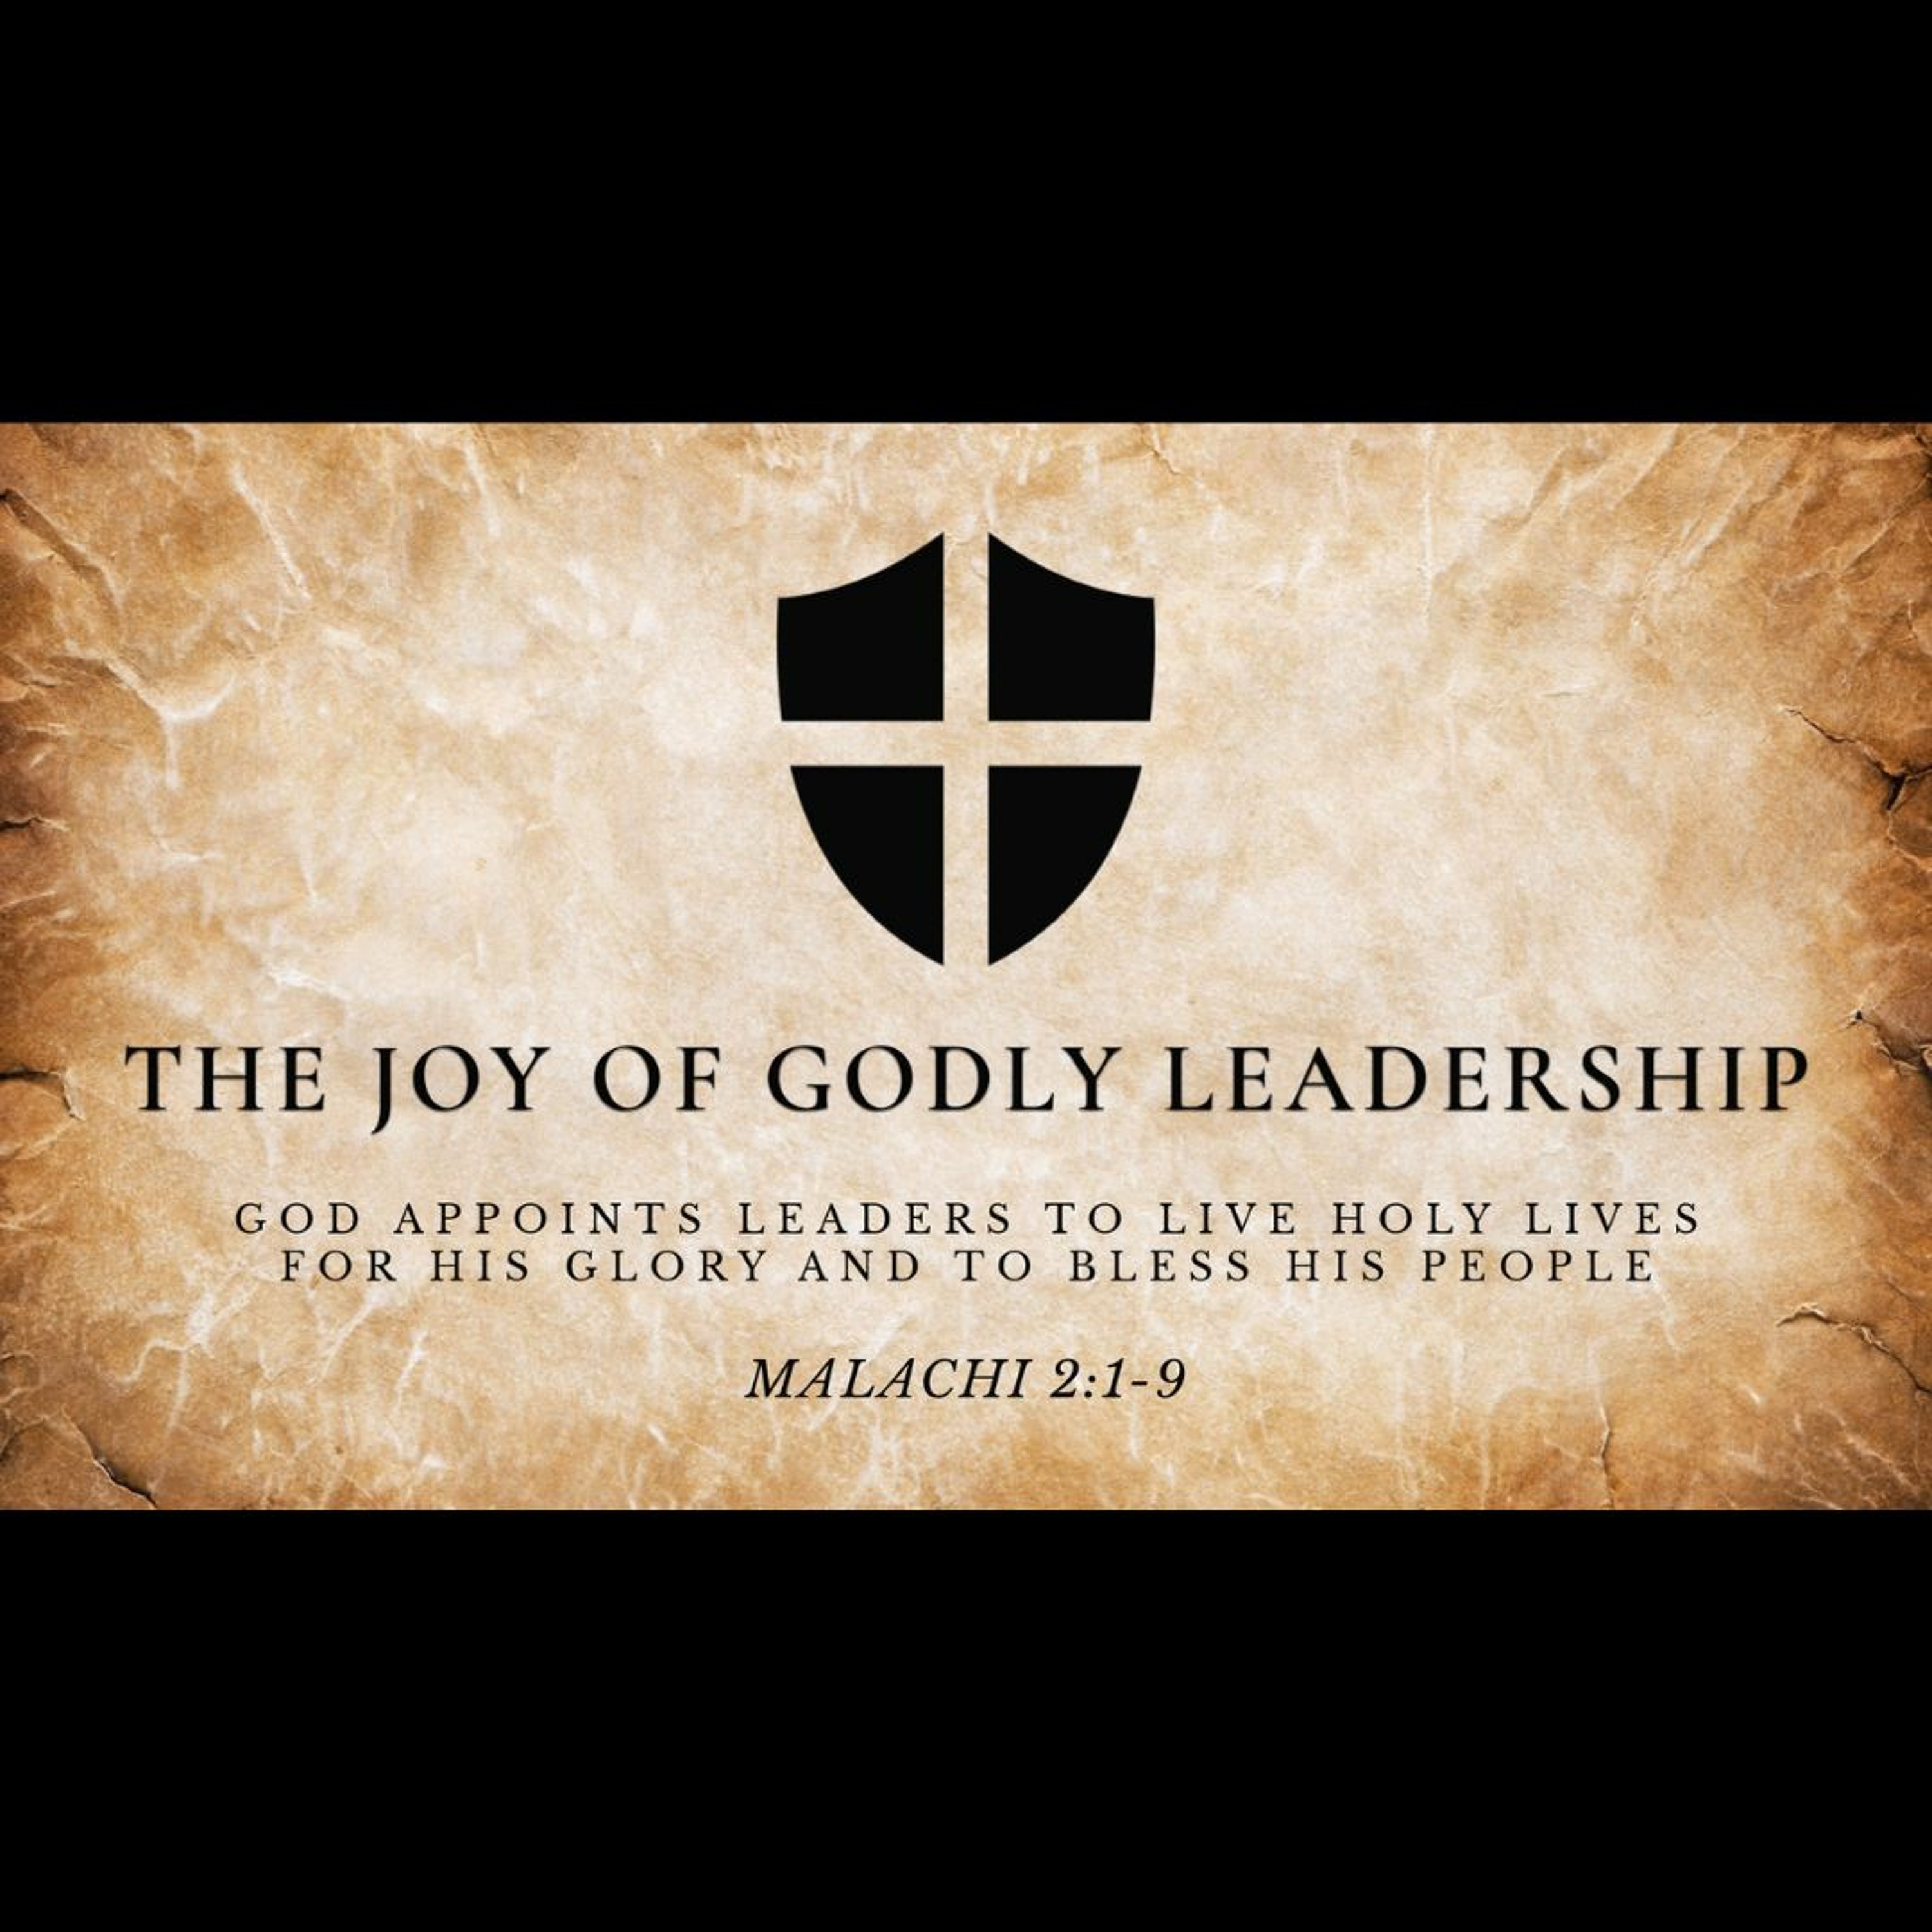 The Joy of Godly Leadership (Malachi 2:1-9)